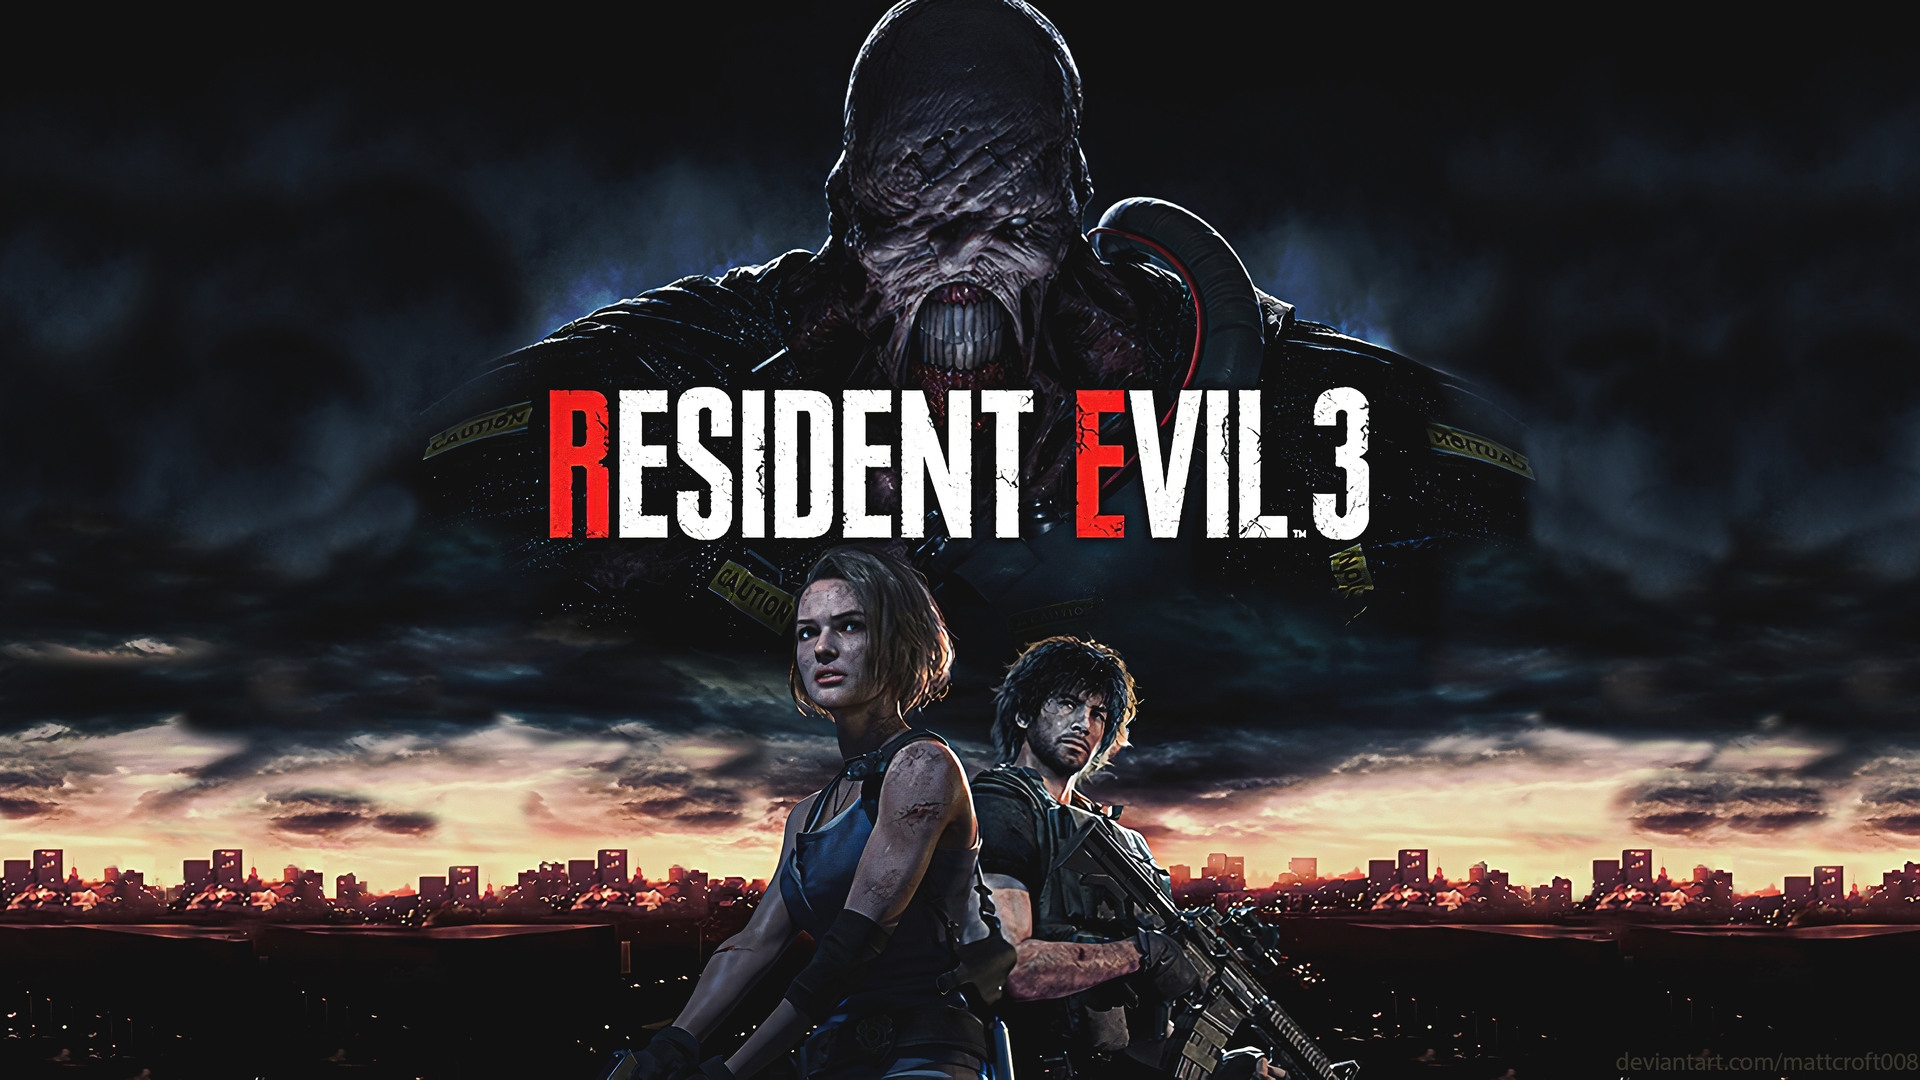 Buy Resident Evil 3 Steam